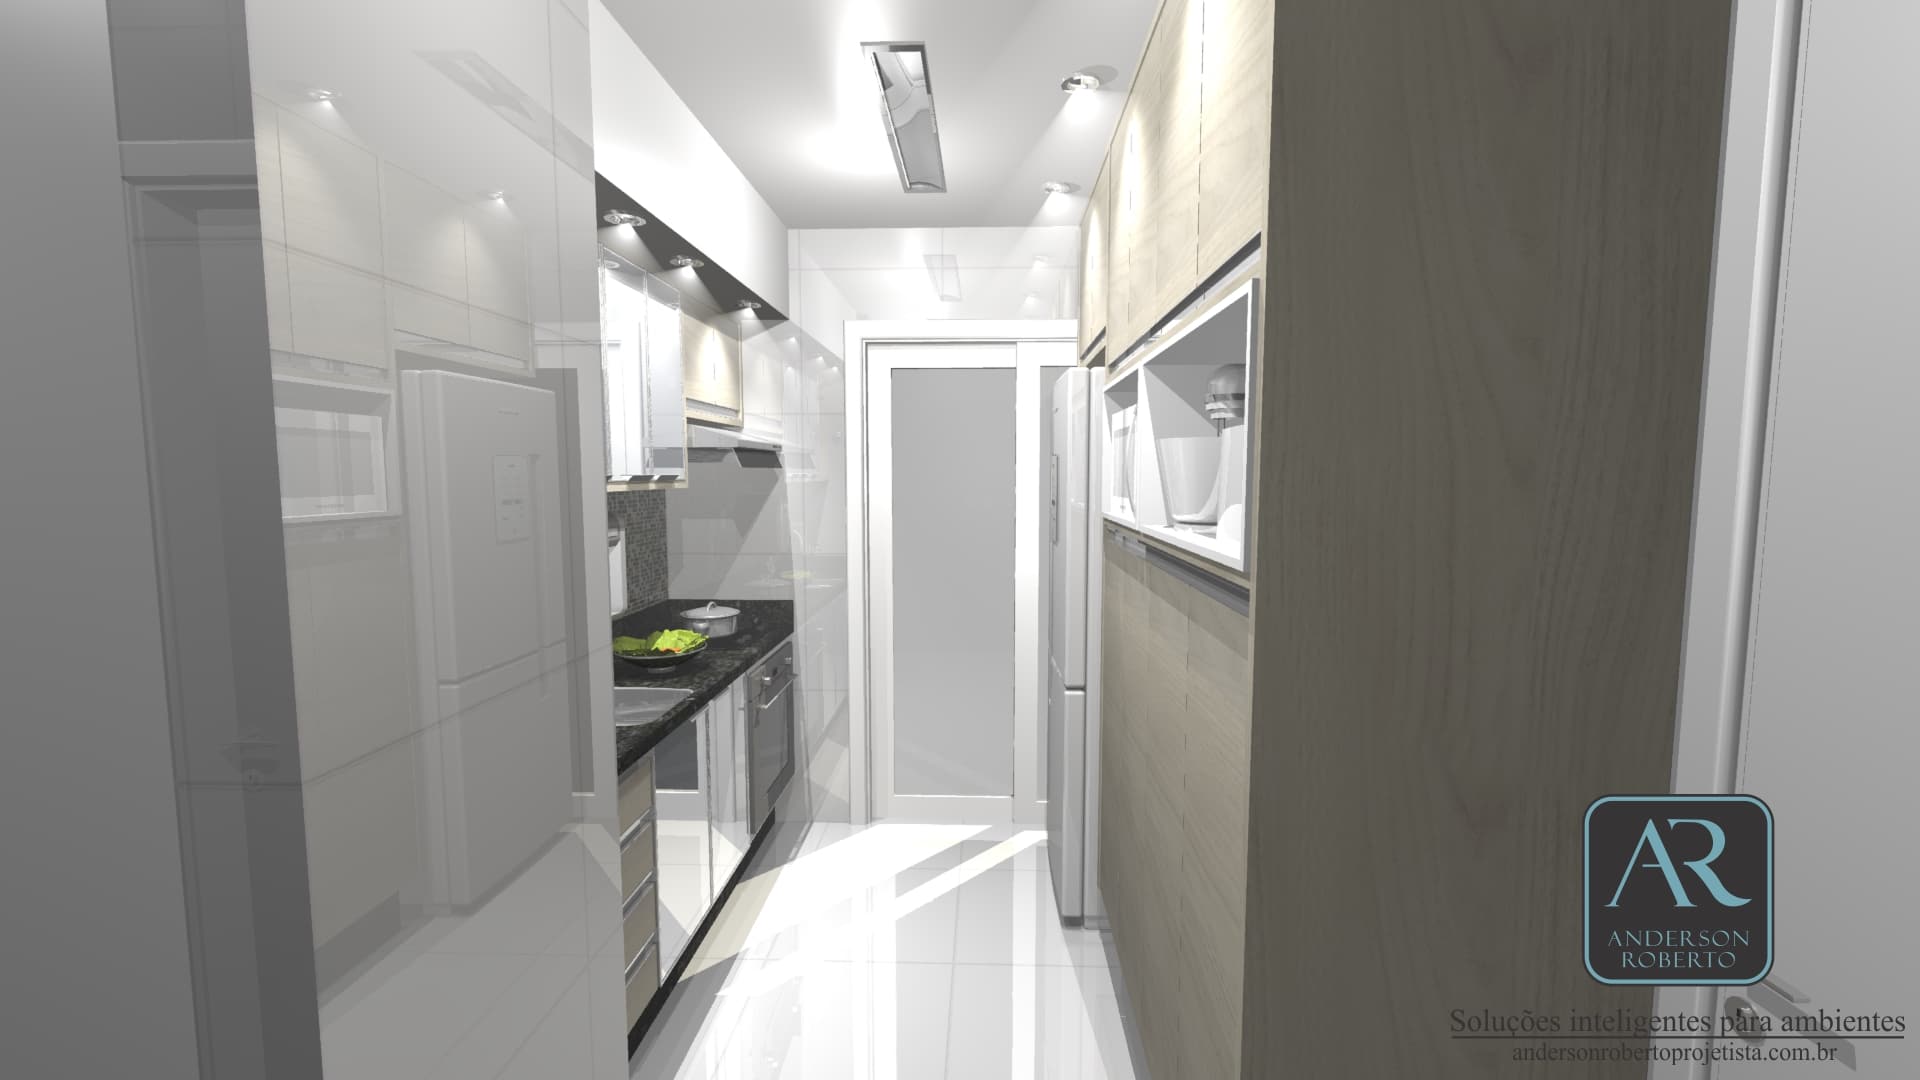 Projeto em 360° de uma cozinha compacta porém muito charmosa.